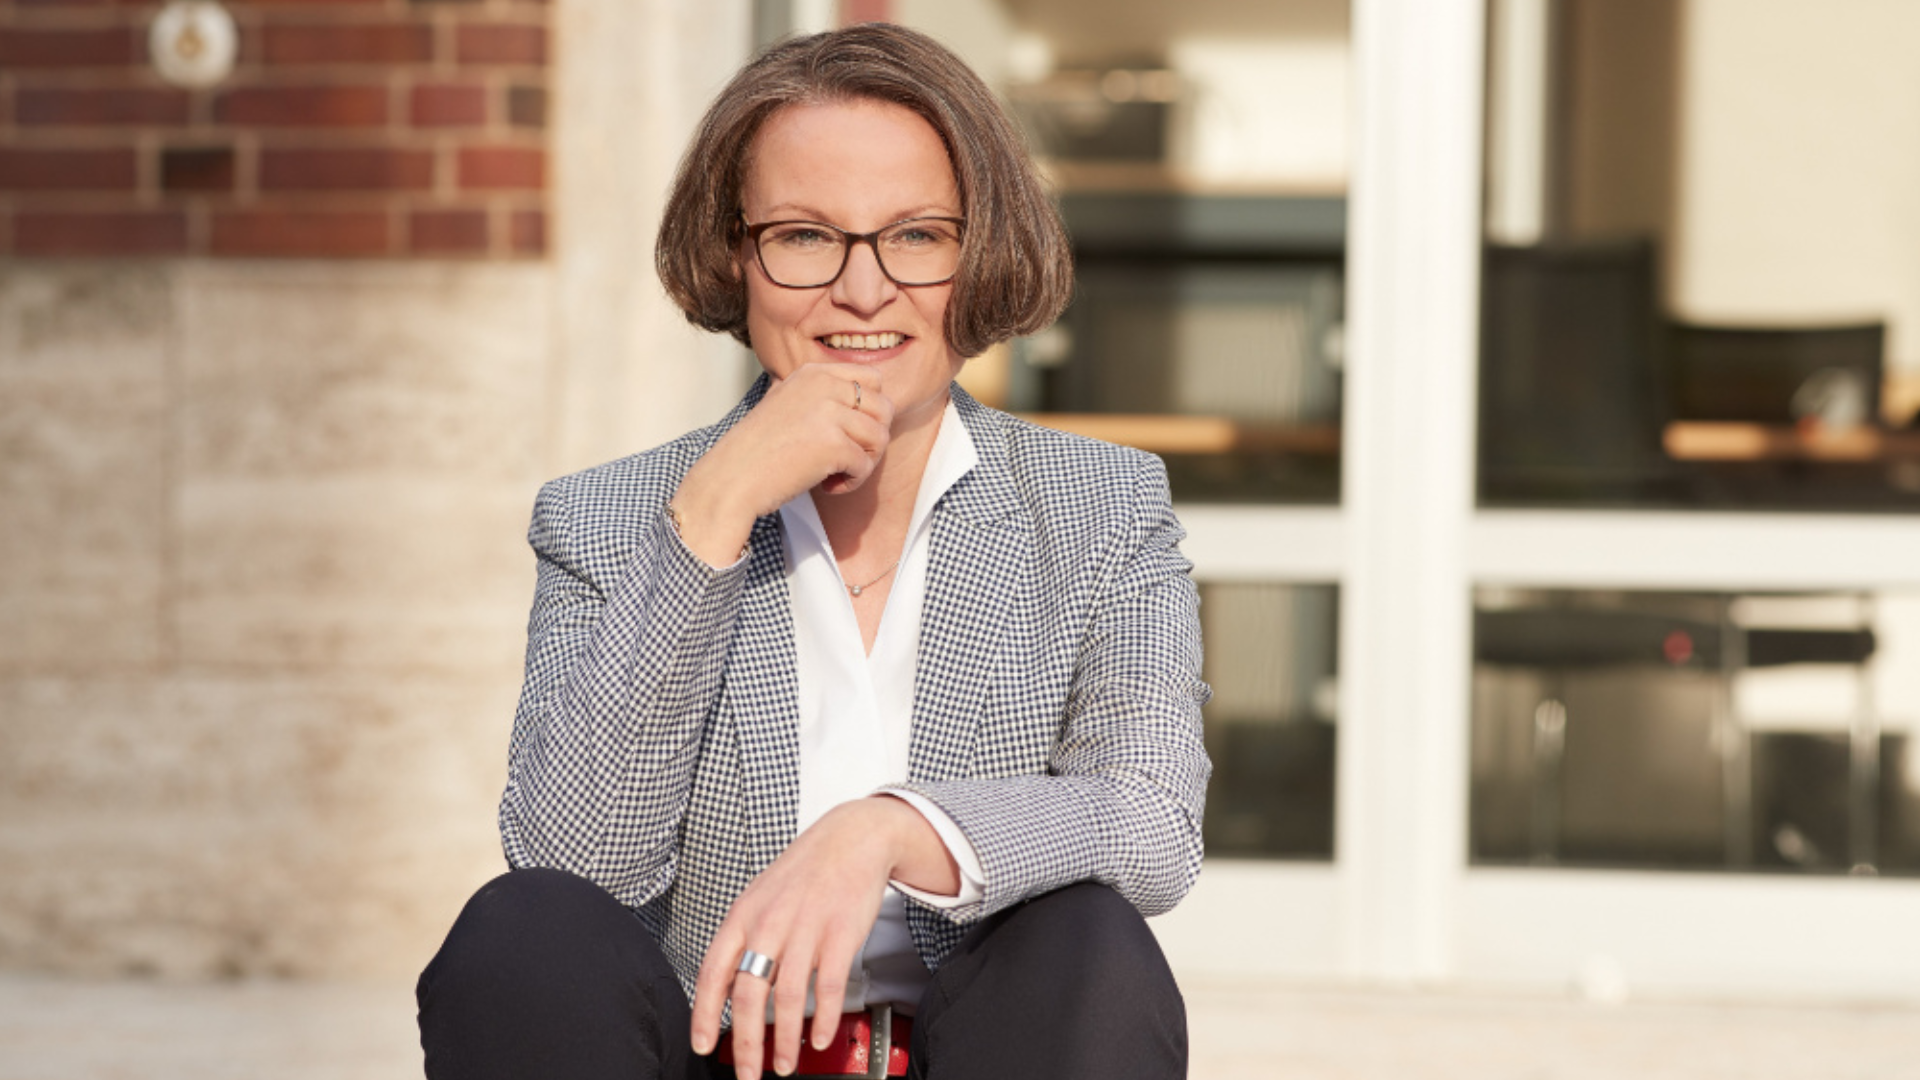 Ina Scharrenbach Spitzenkandidatin der CDU Ruhr zur Landtagswahl im Mai 2022